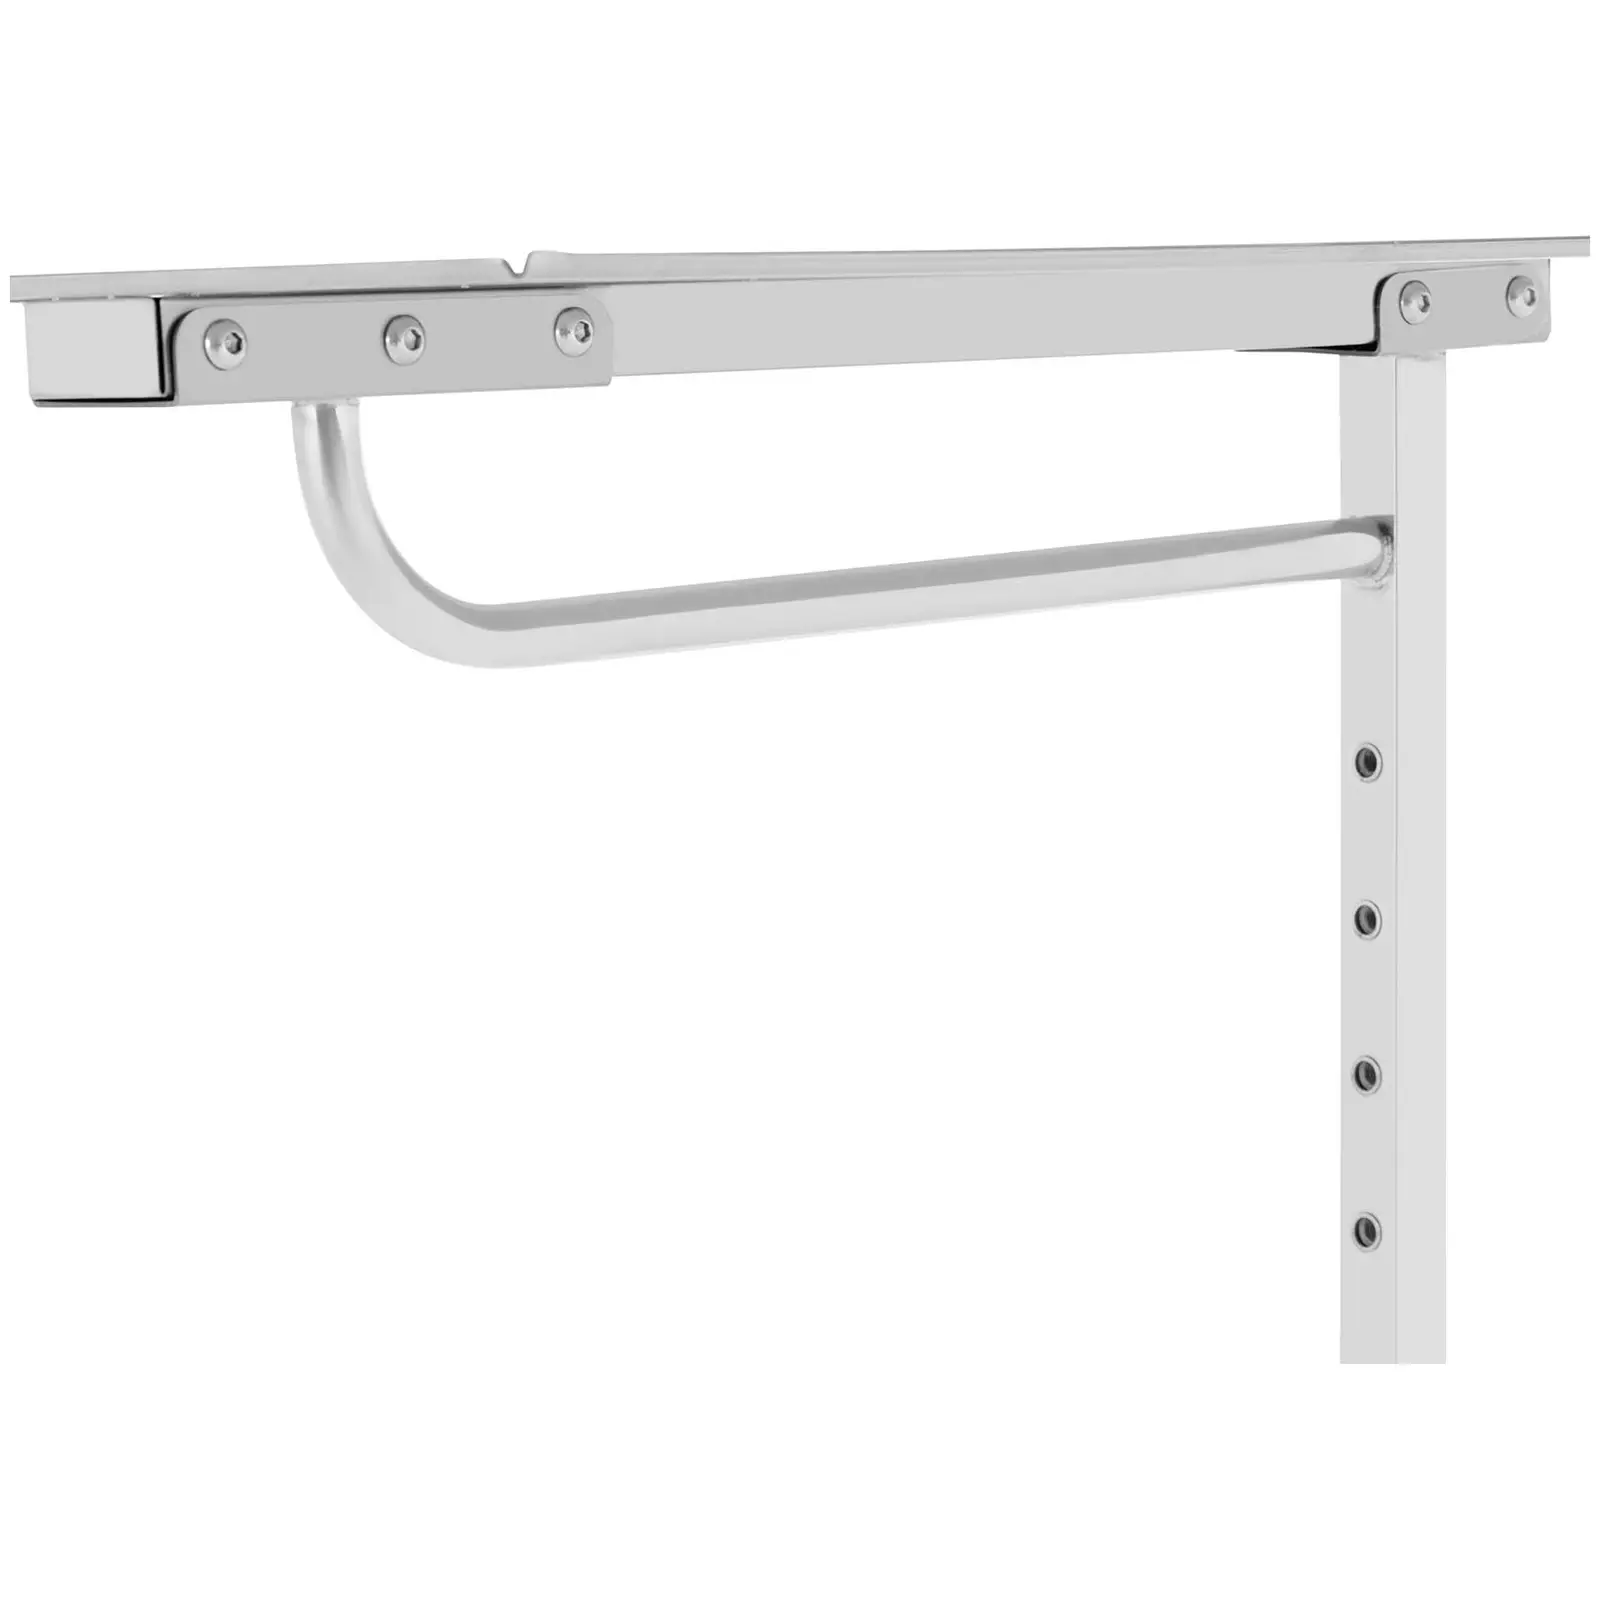 Stolík na nástroje - bočný otvorený dizajn - 60 x 40 cm - výškovo nastaviteľný - nehrdzavejúca oceľ/guma